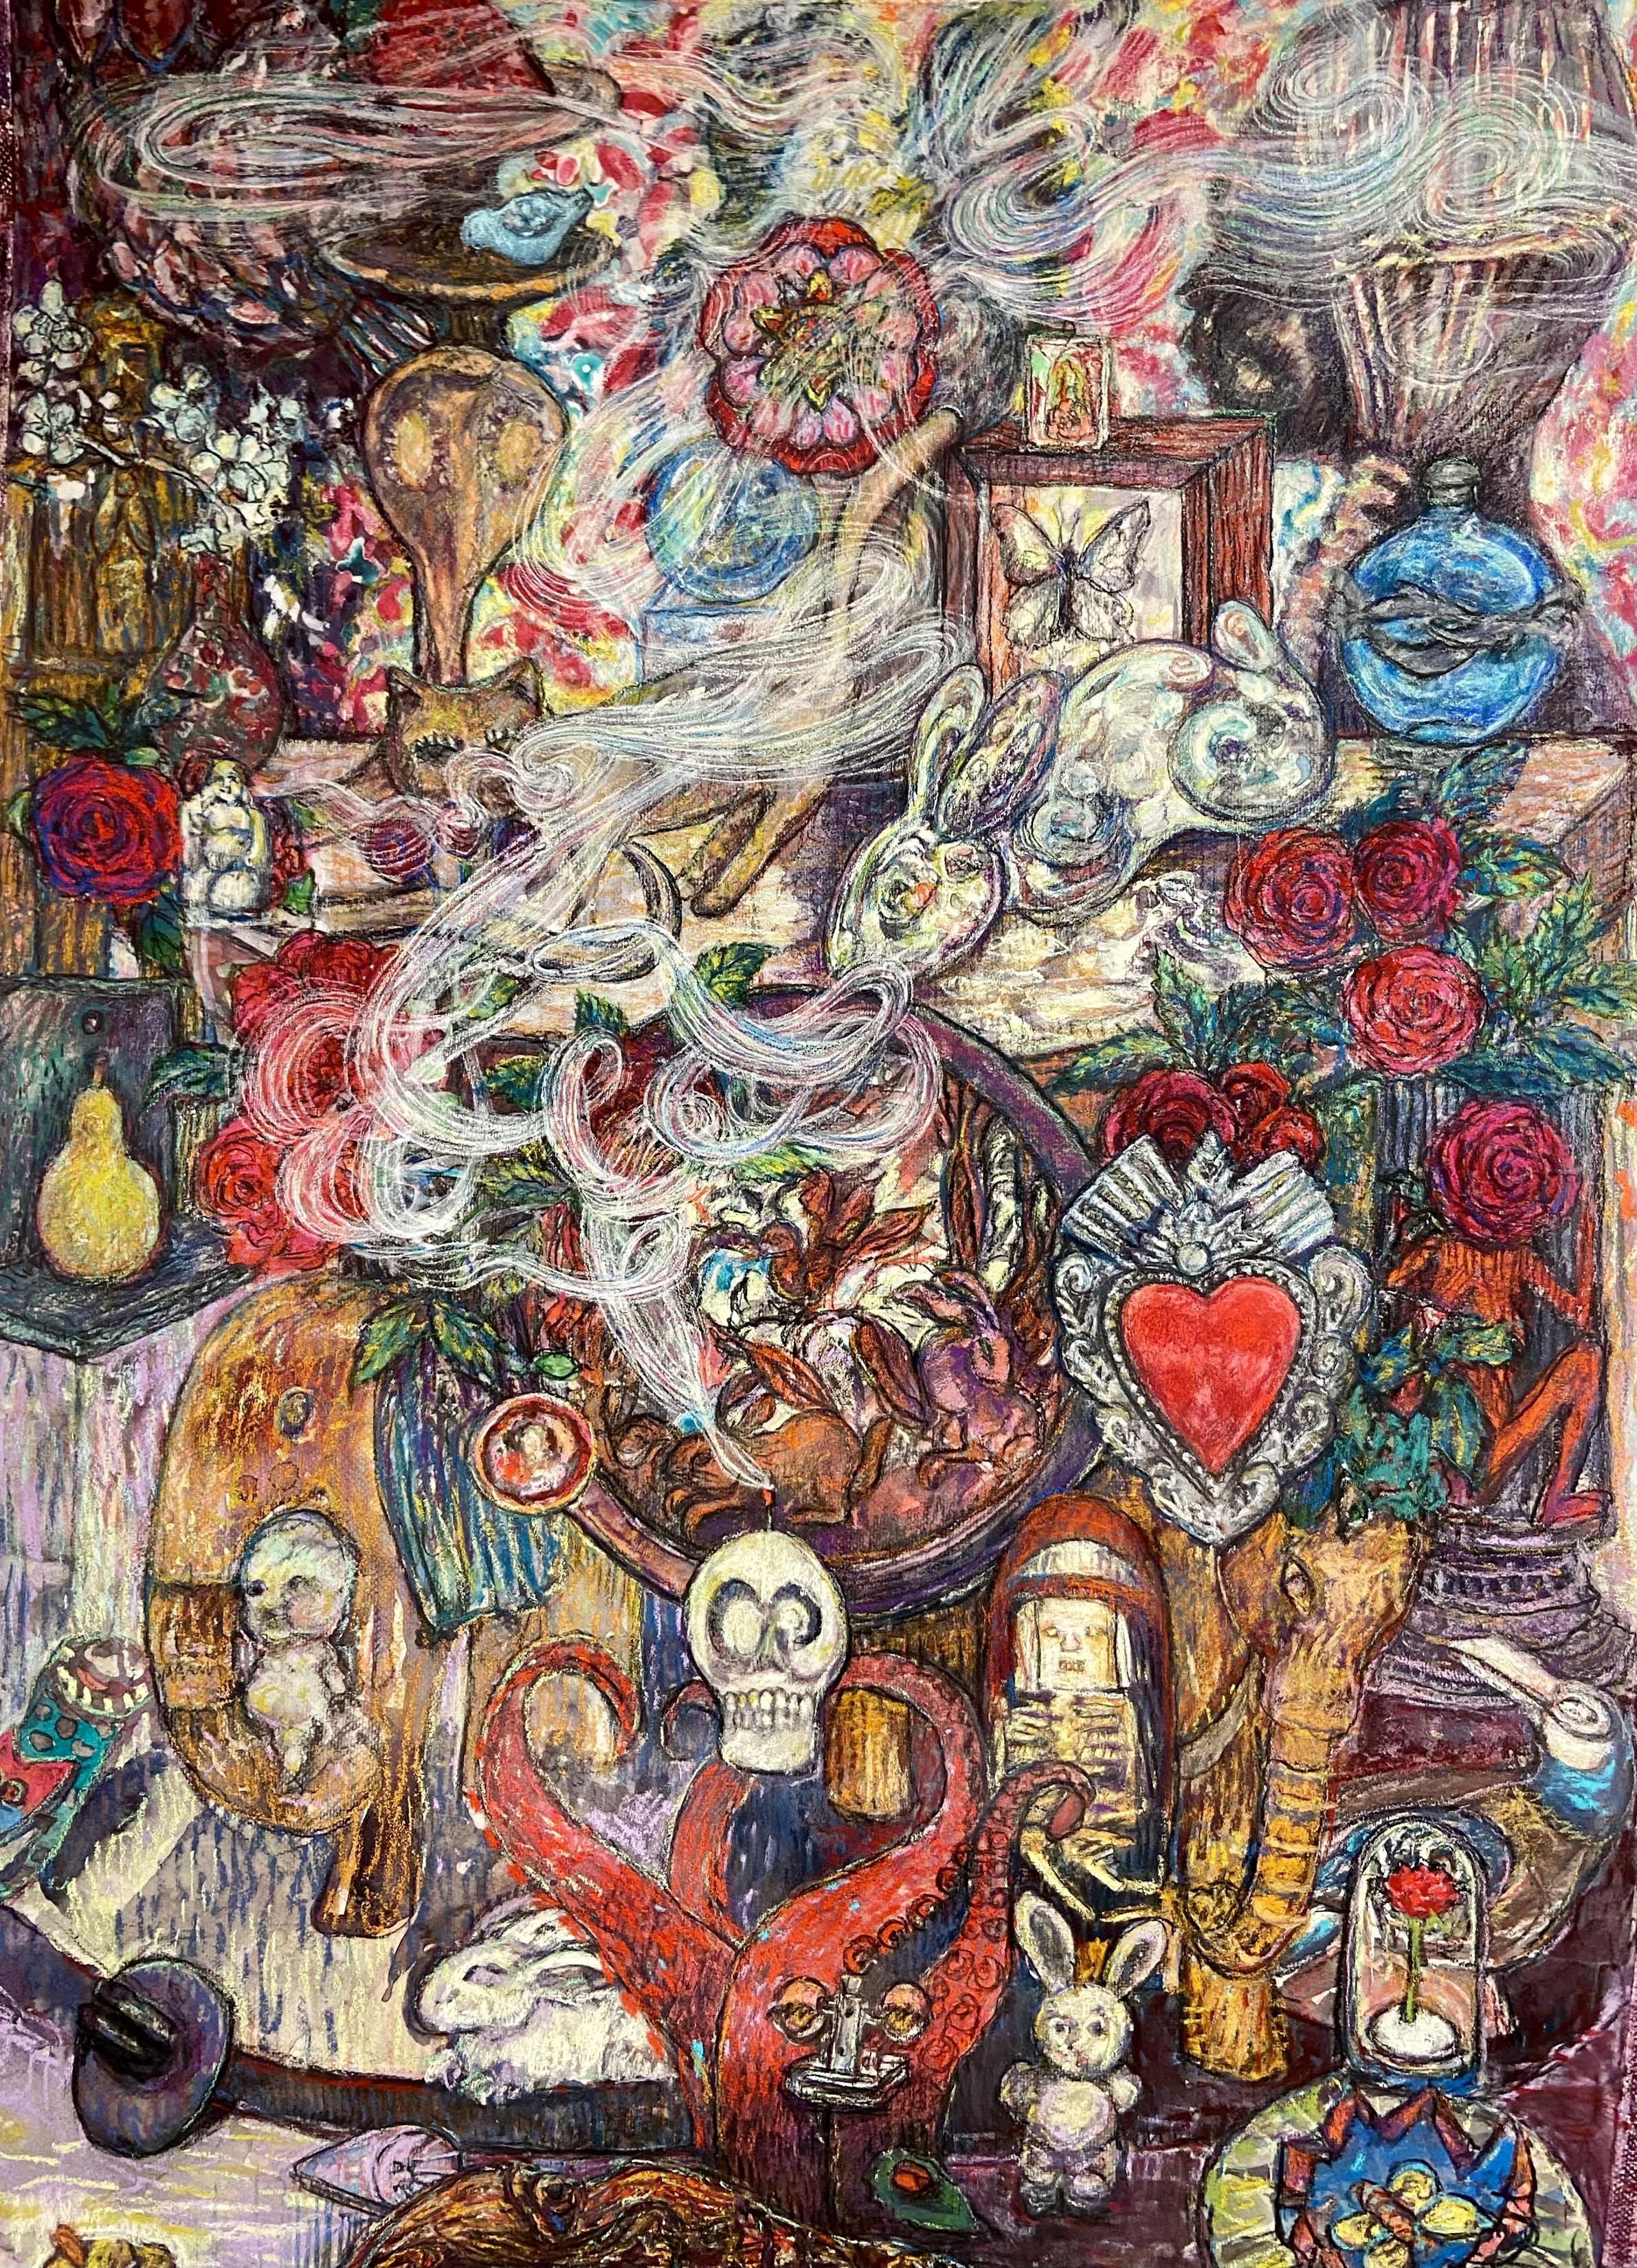 Erin Dixon Still-Life – "Souvenirs" - Pastellzeichnung, Natur, Pflanzen, Stillleben, surreal, Schädel, Herz